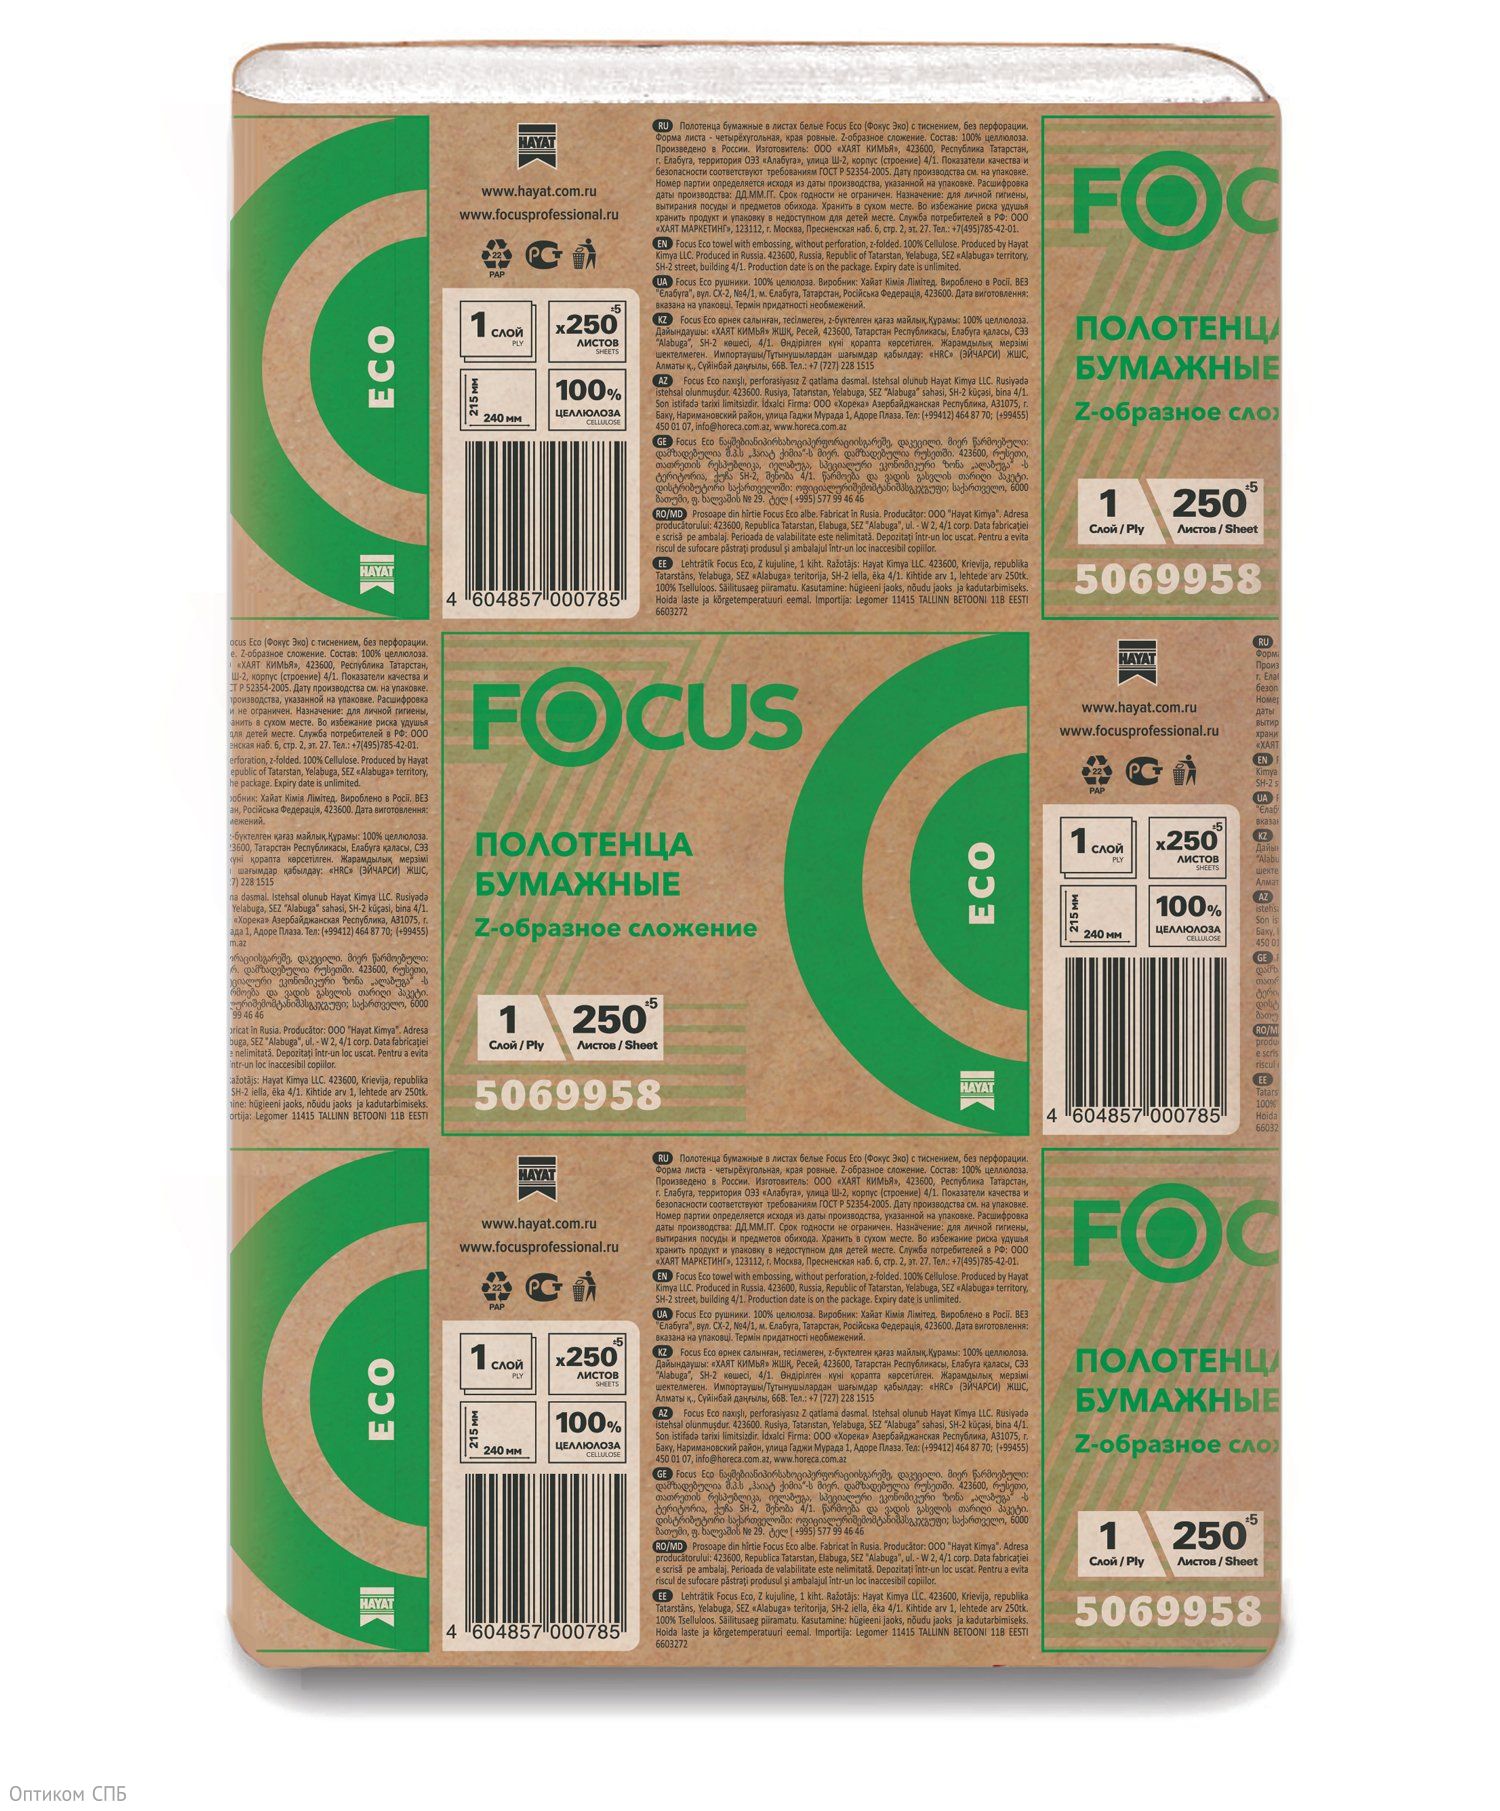 Полотенца бумажные листовые Focus Eco (Фокус) произведены из целлюлозы, 1-слойные, с тиснением, Z-сложения. Предназначены для вытирания рук, прекрасно впитывают влагу. Используются в узких диспенсерах для бумажных полотенец Z-сложения. В пачке 250 листов, размер разложенного листа 24х21,5 см.